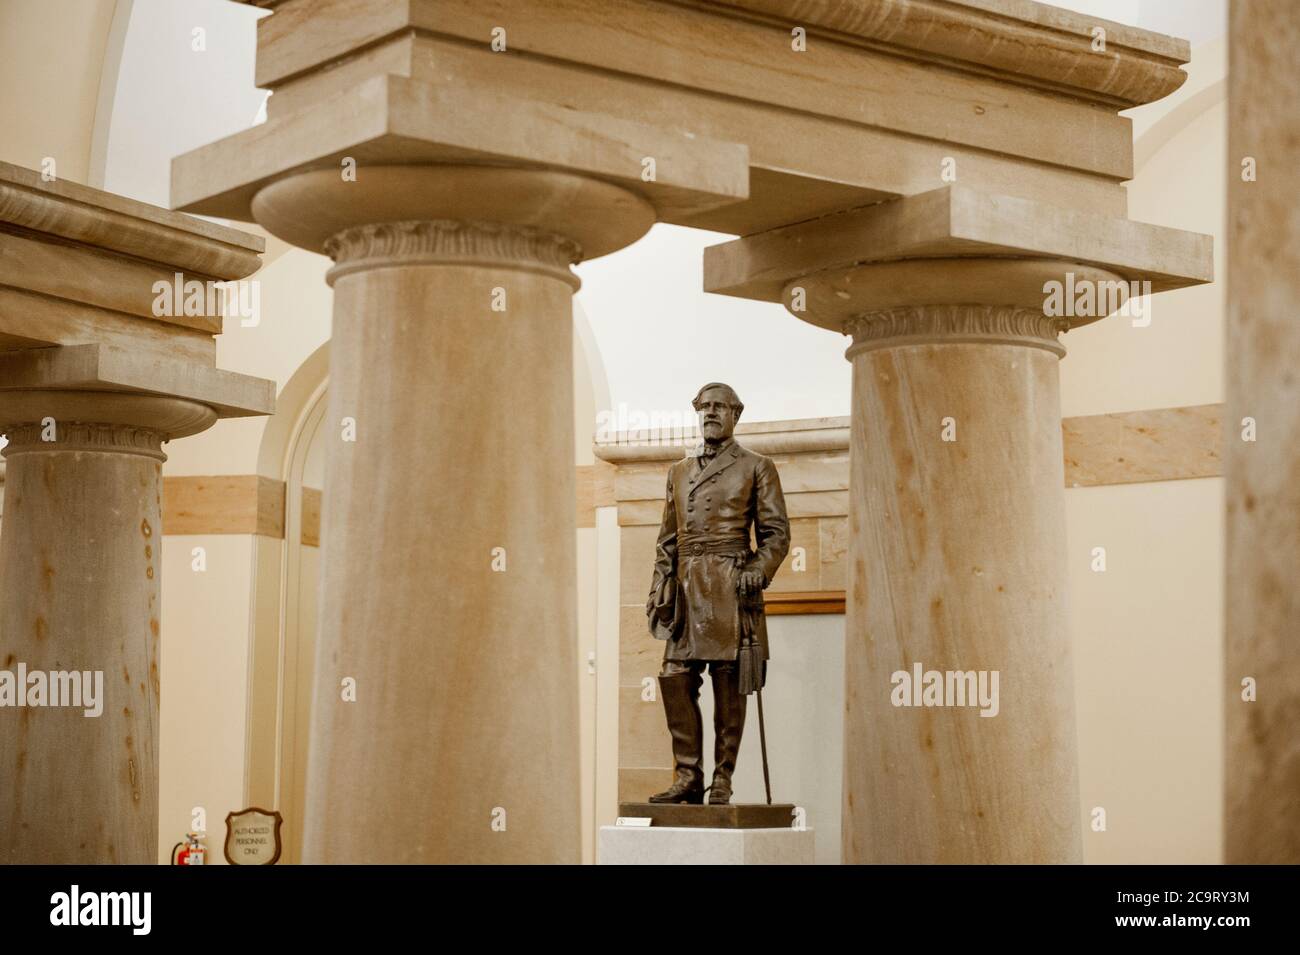 Questa statua del generale Robert E. Lee fu donata alla National Statuary Hall Collection dal Commonwealth della Virginia nel 1909 e si trova nella cripta del Campidoglio degli Stati Uniti a Washington, DC., venerdì 31 luglio 2020. Lee frequentò l'accademia militare degli Stati Uniti (West Point) e servì durante la guerra messicana. In seguito fu comandante dell'esercito degli stati confederati d'America (CSA) durante la guerra civile americana. Ha vissuto dal 19 gennaio 1807 al 12 ottobre 1870. Credito: Rod Lammey/CNP /MediaPunch Foto Stock